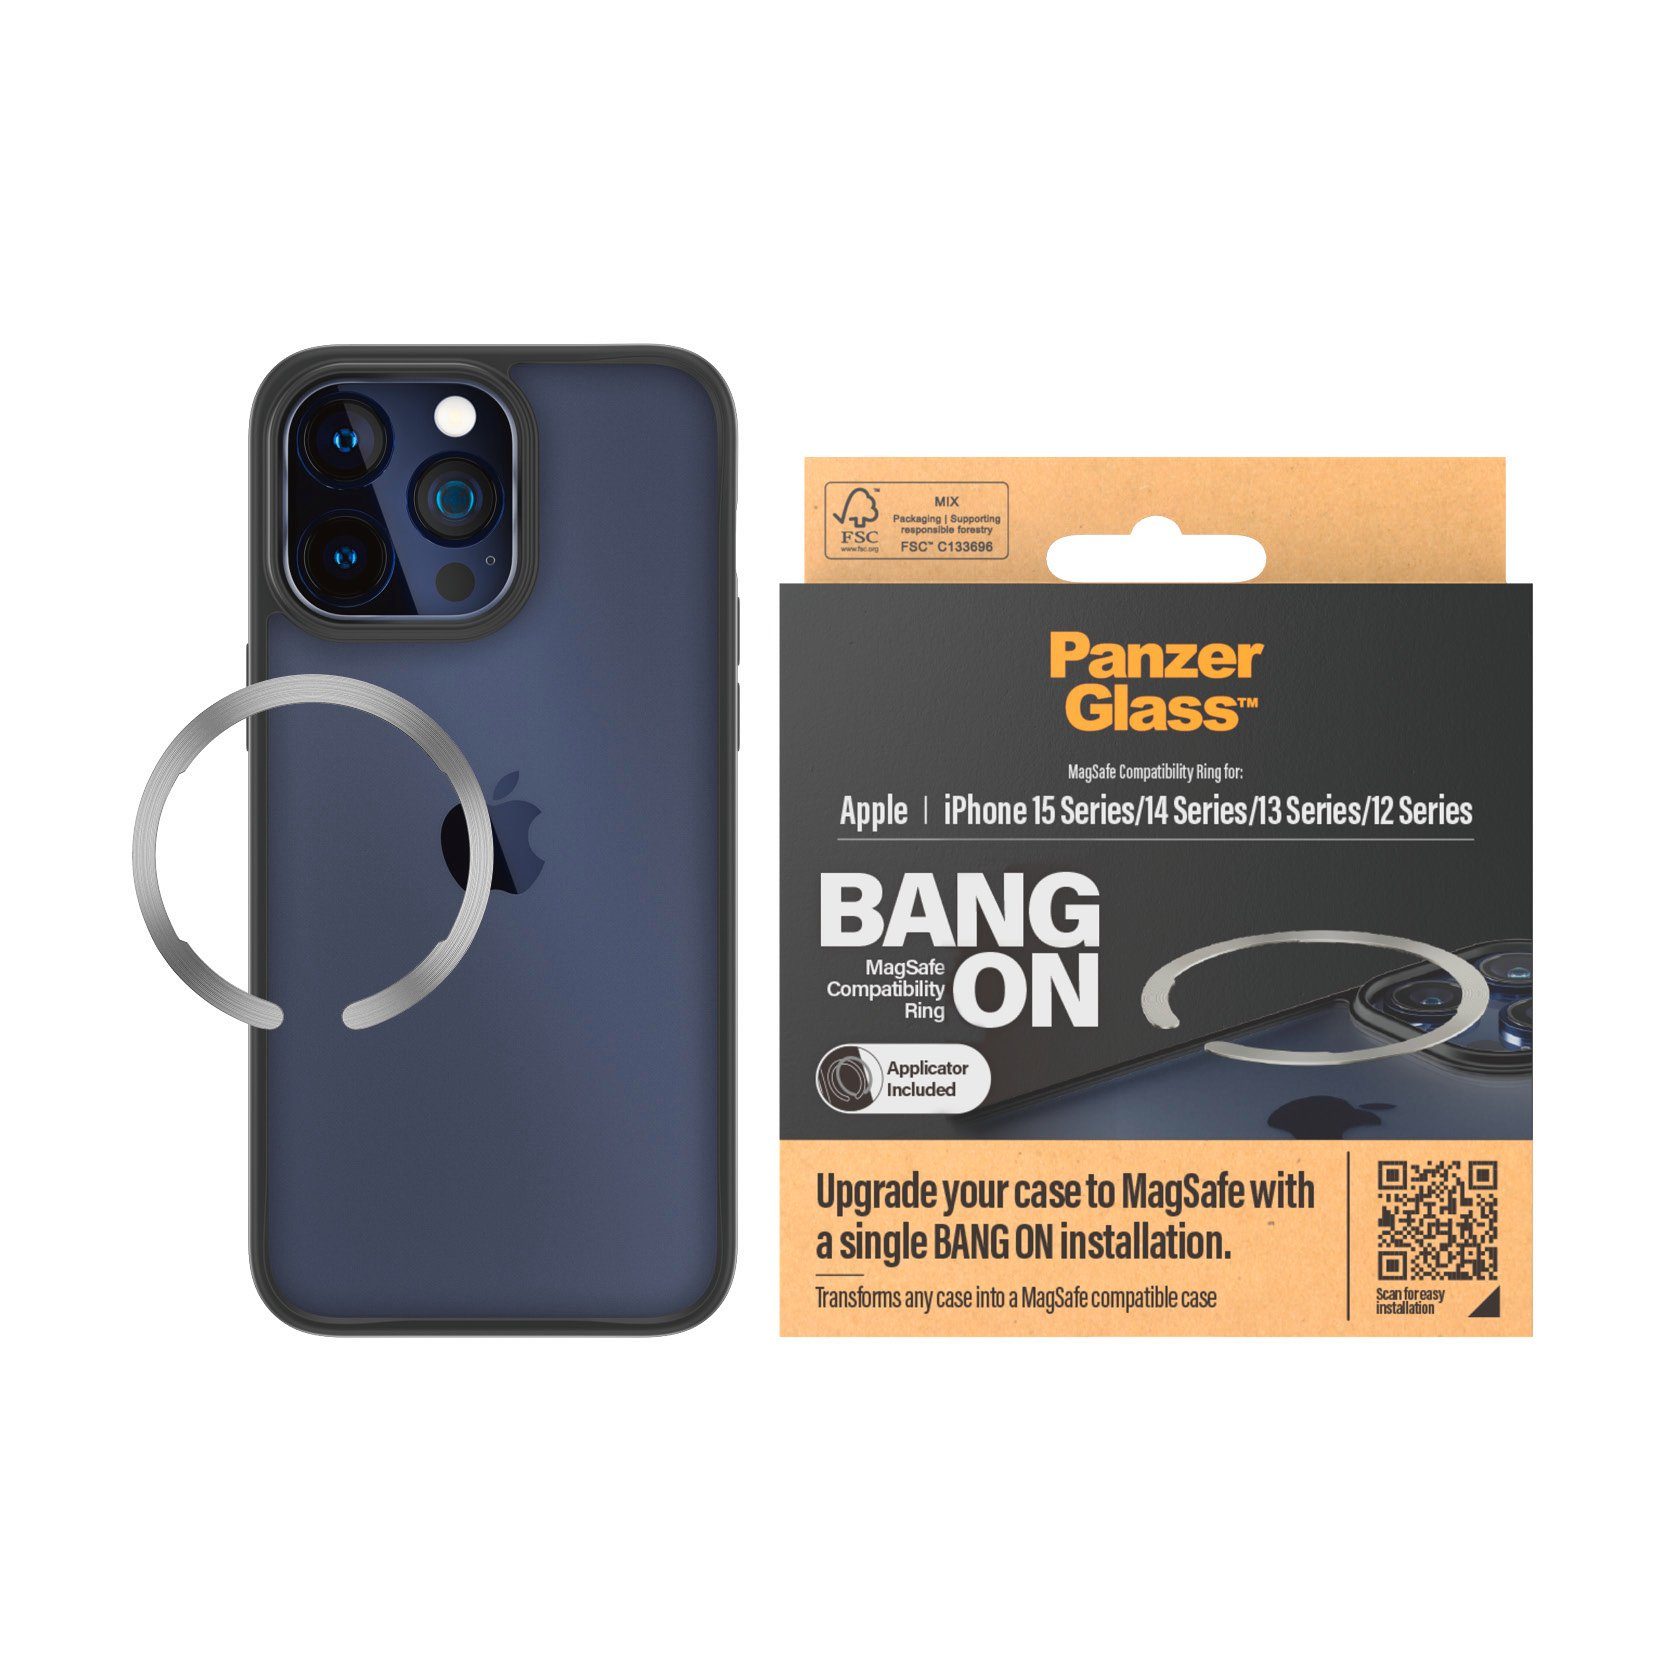 PanzerGlass Backcover MagSafe kompatibler Ring for iPhone 12,13,14 und 15  Serie, Erweitert jede Handyhülle zu einer MagSafe-kompatiblen Hülle